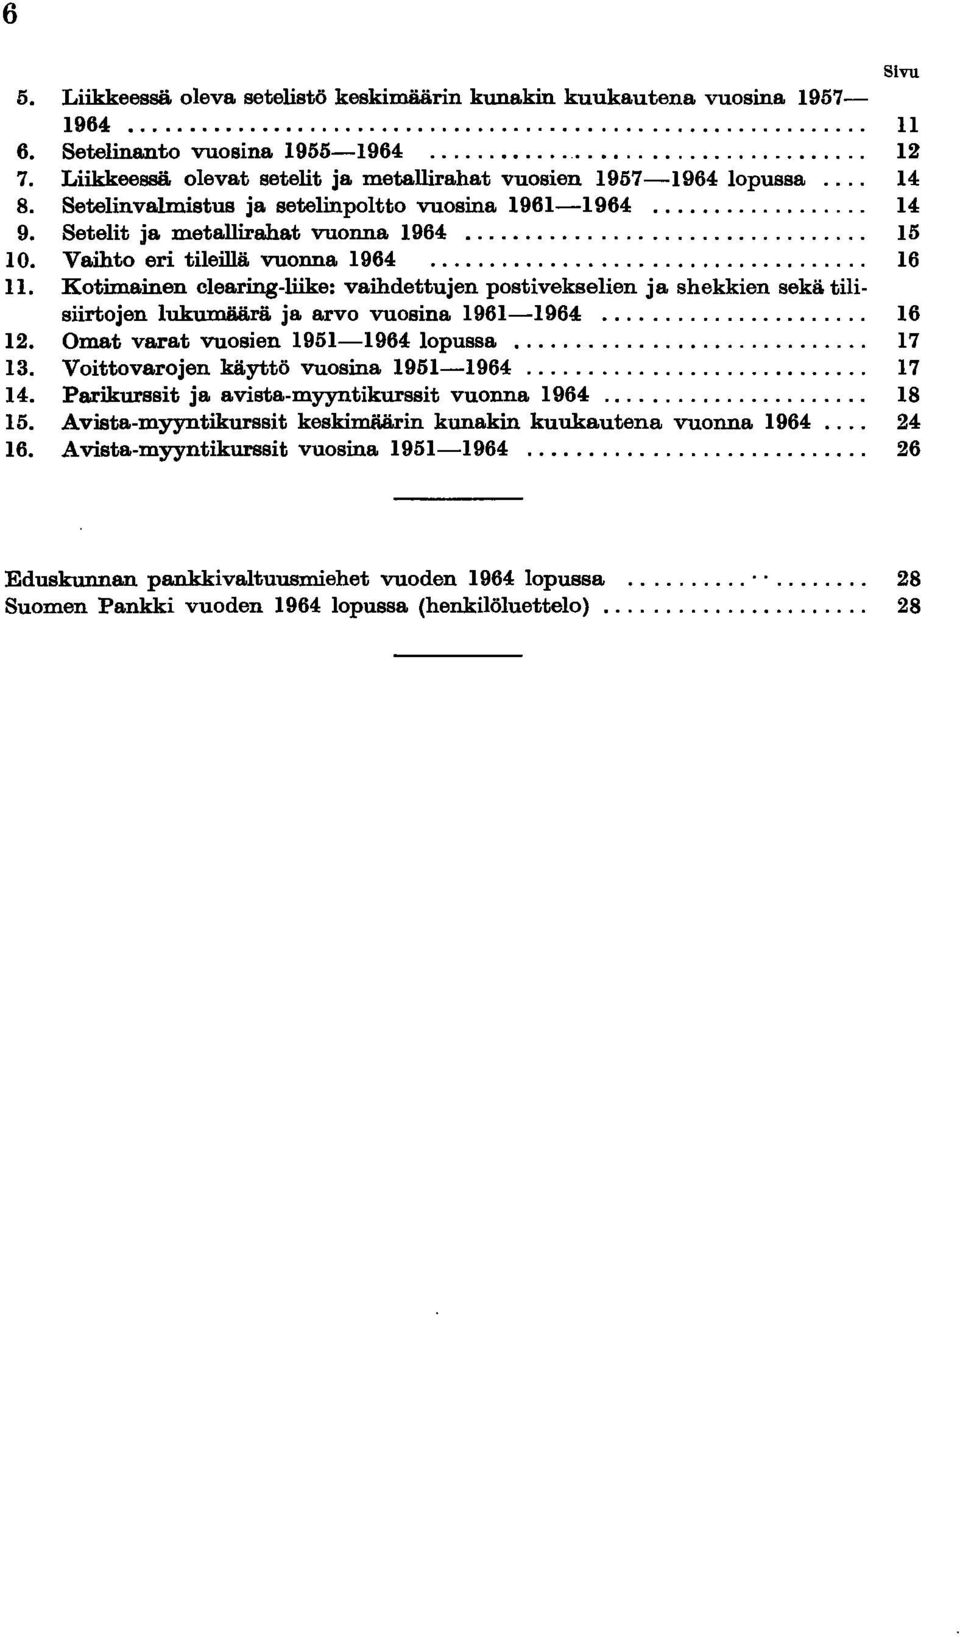 Kotimainen clearing-liike: vaihdettujen postivekselien ja shekkien sekä tilisiirtojen lukumäärä ja arvo vuosina 1961-1964... 16 12. Omat varat vuosien 1951-1964 lopussa... 17 13.